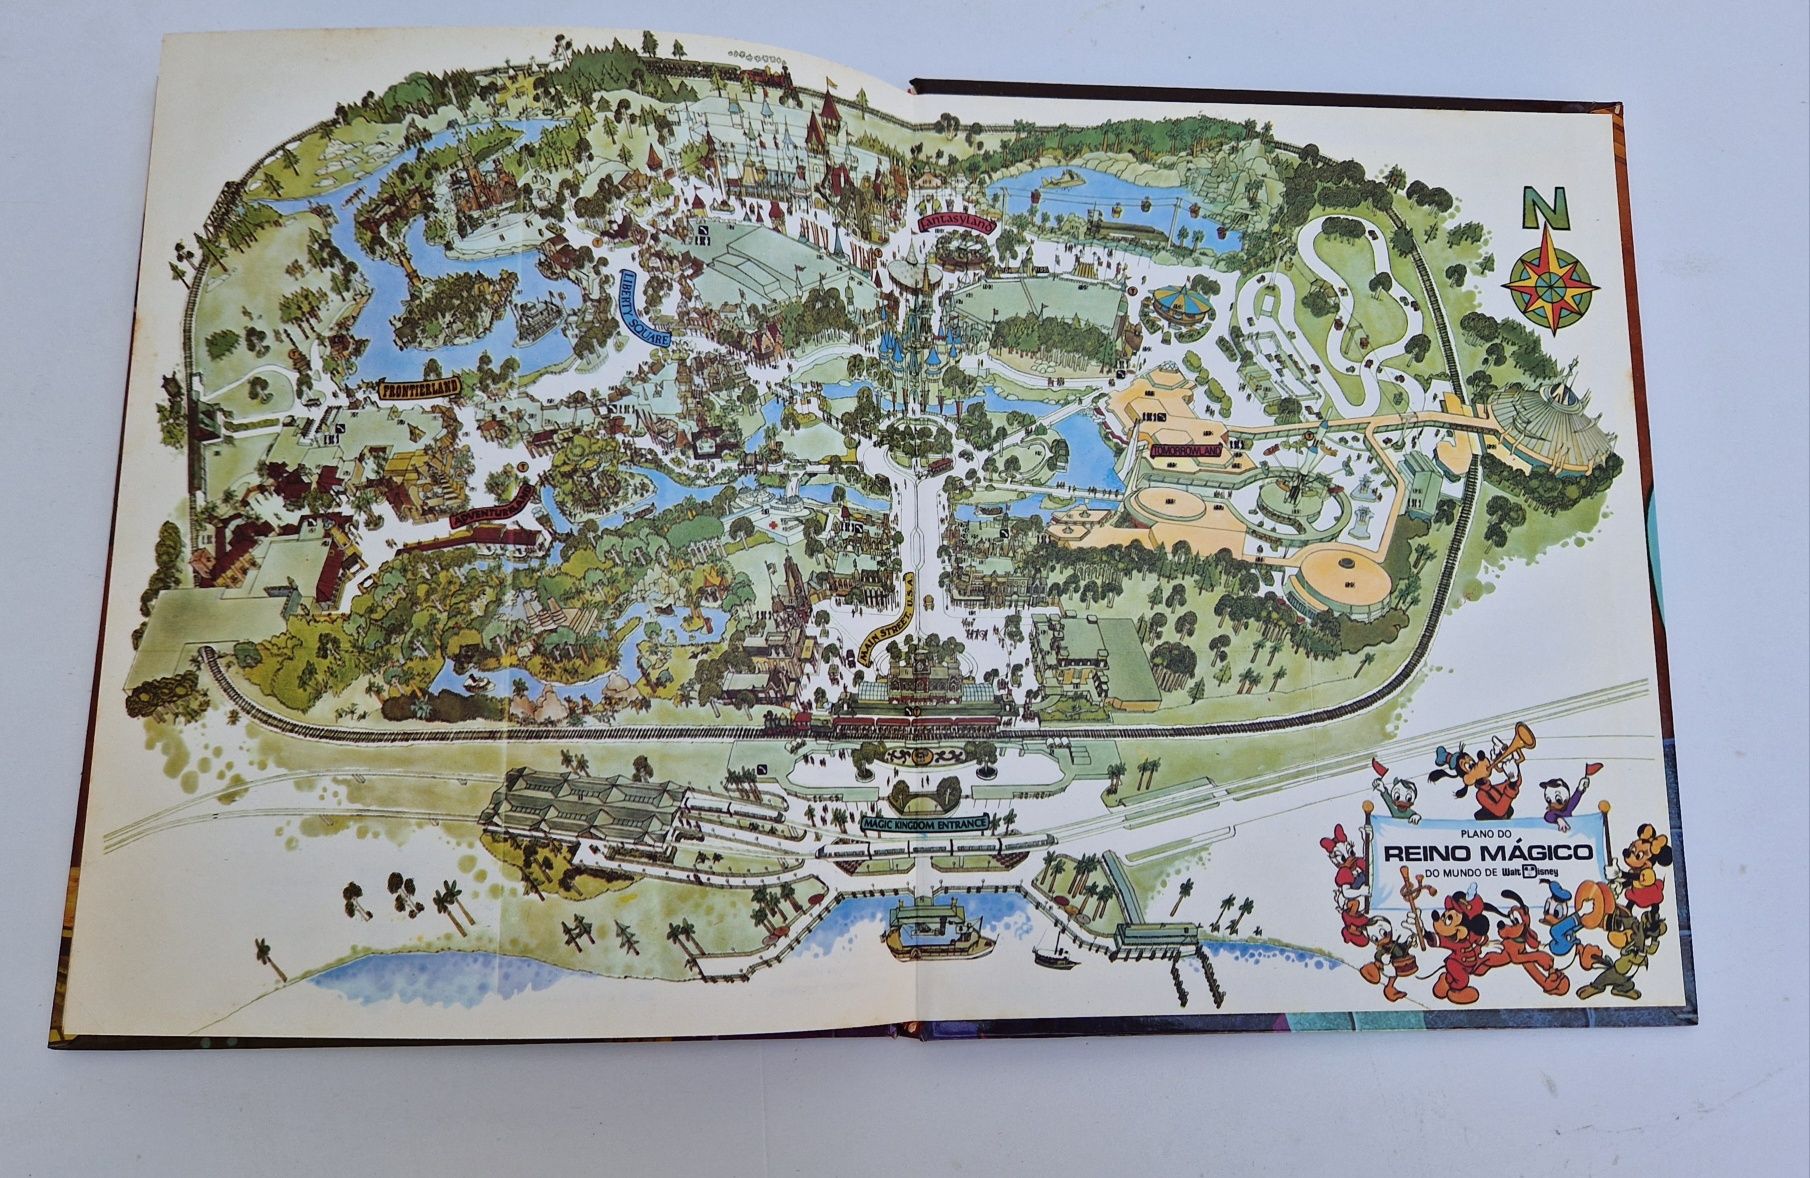 Walt Disney - Os Piratas das Caraíbas Edição 1979